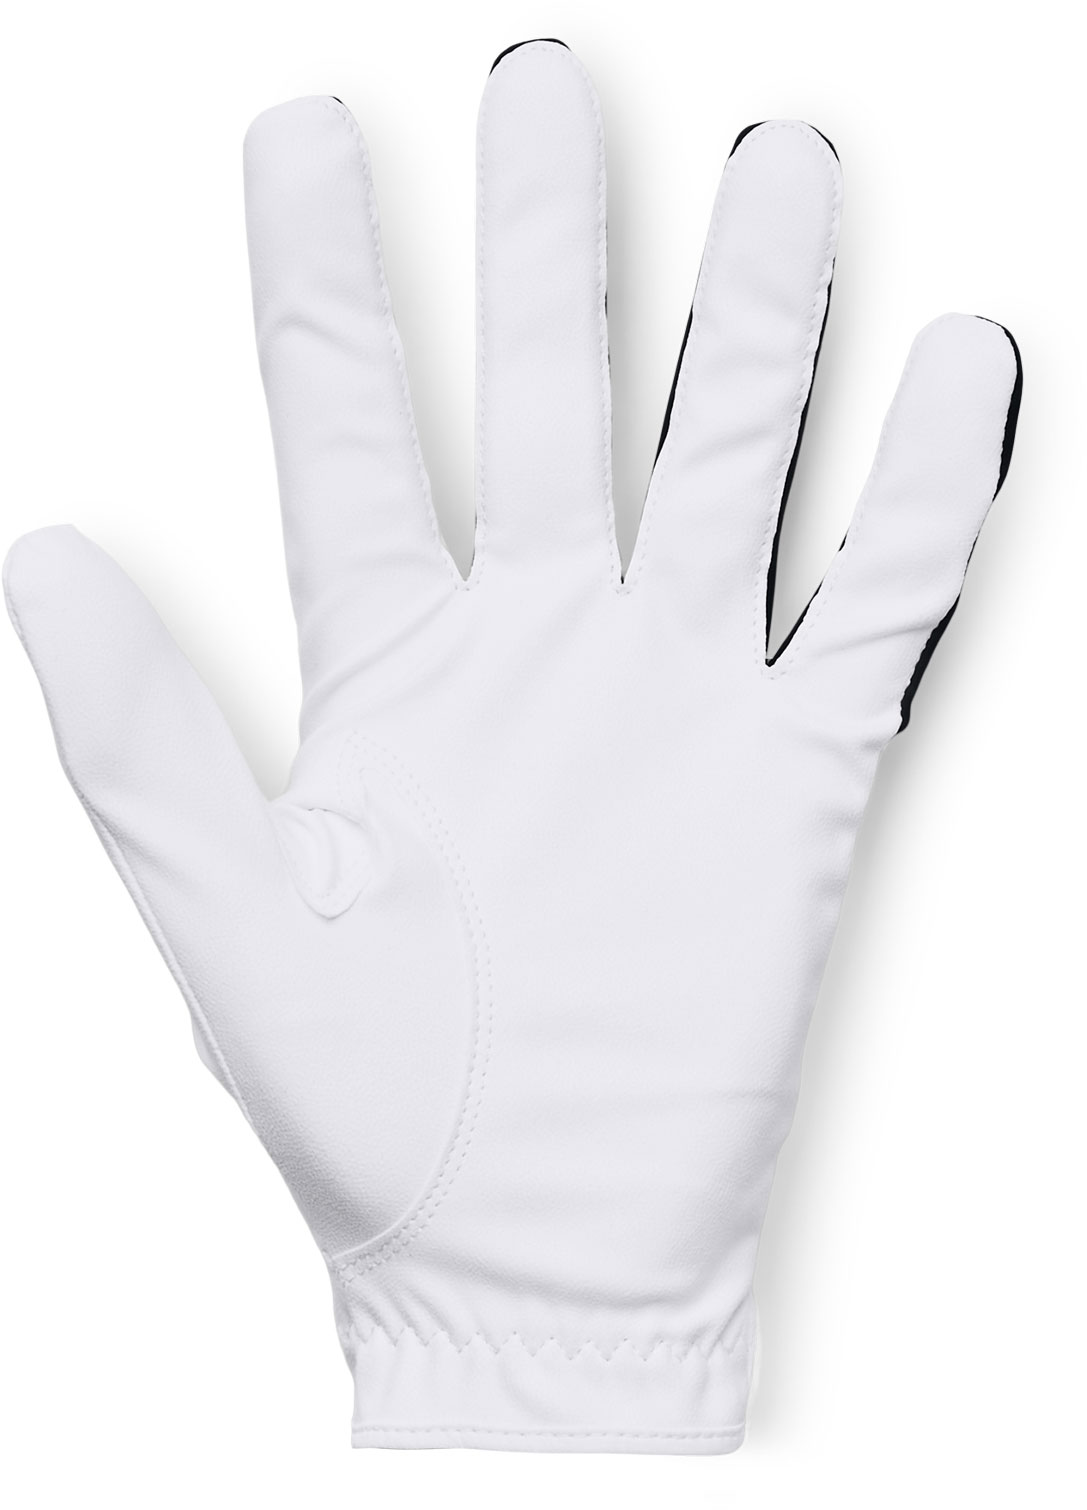 Men’s golf gloves